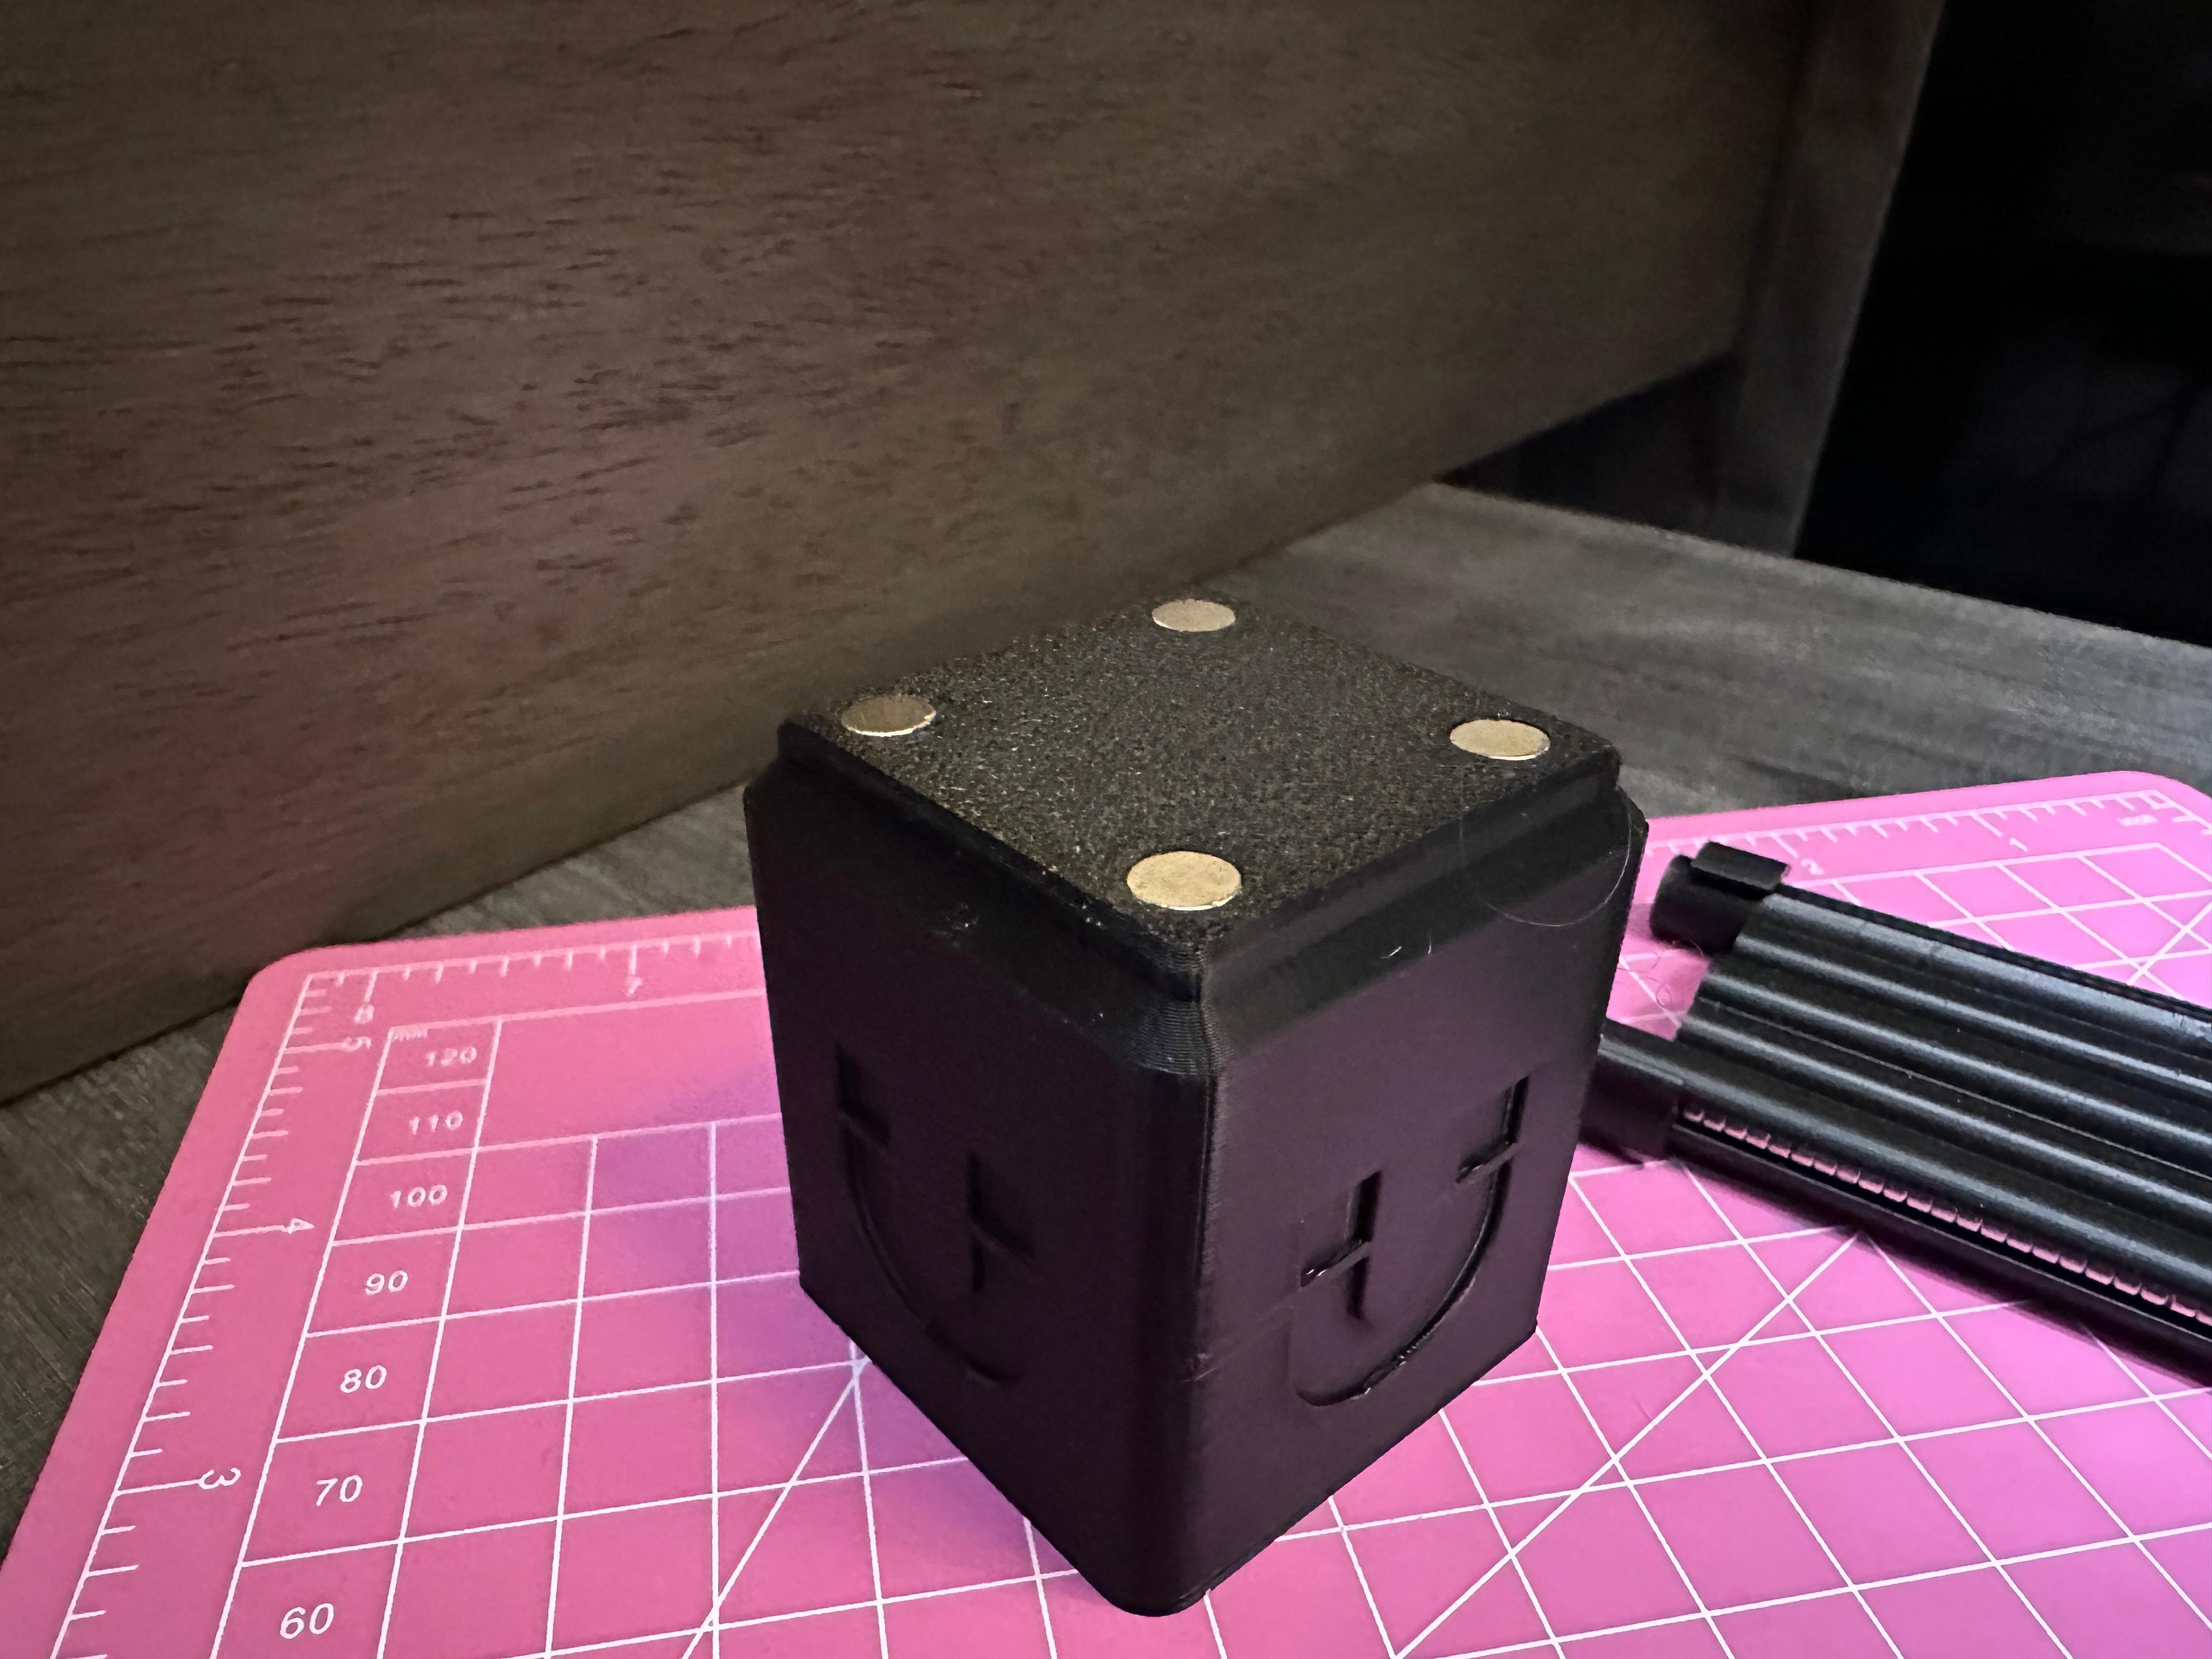 6X2mm Magnet Dispenser Holder - Gridfinity 3d model